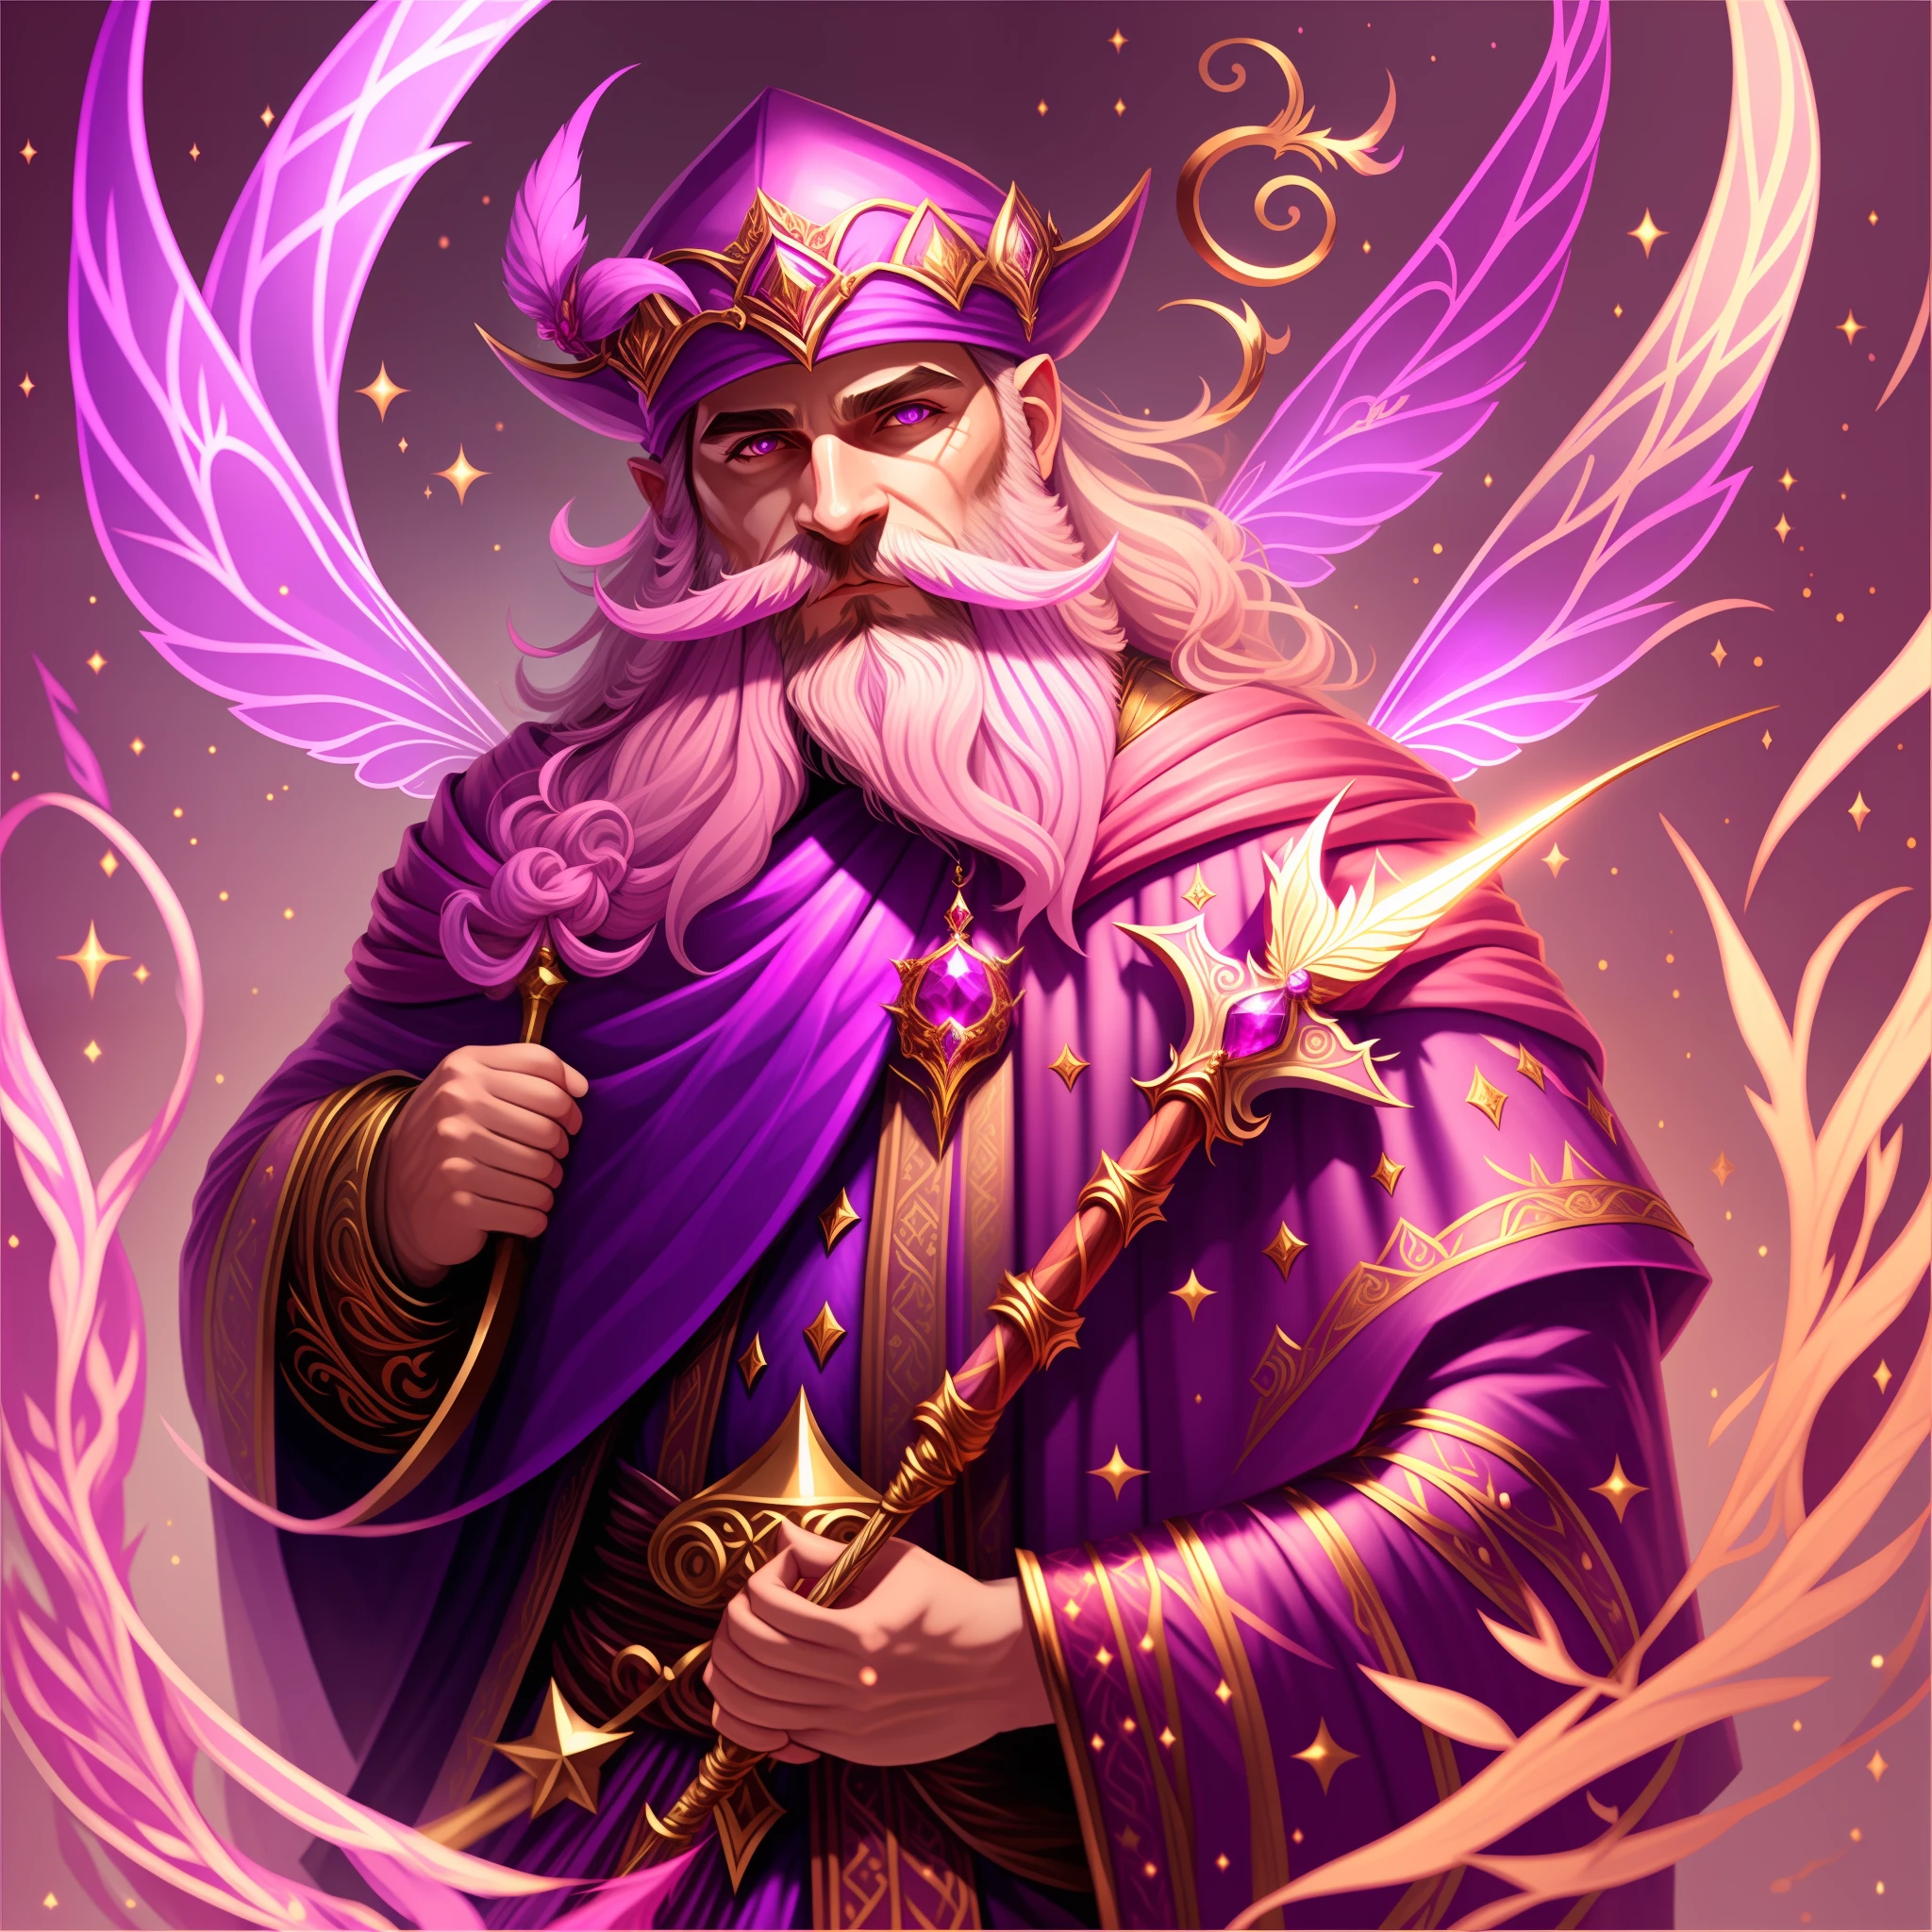 仙女, 男性, 粉紫色巫师斗篷, 镶有红宝石的金魔杖, 巫师胡子, 魔法四处飞扬, 杰作, 最好的质量